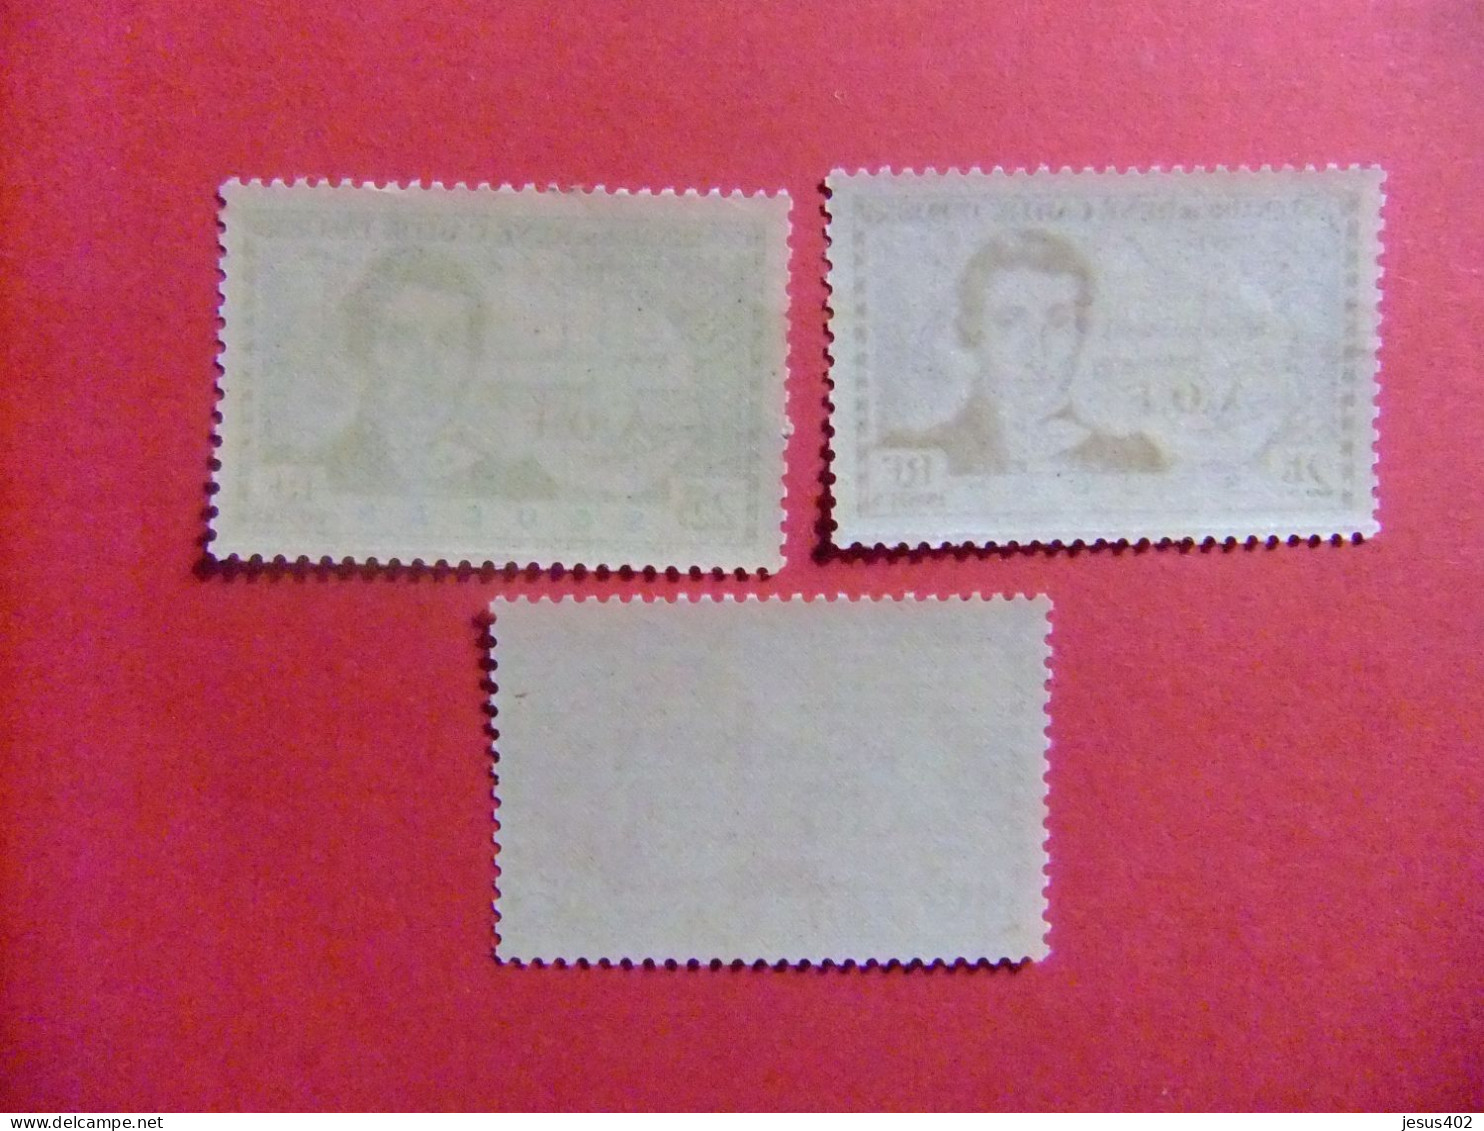 55 SUDAN - SOUDAN FRANCAISE 1939 / RENÉ CAILLIÉ (explorador) / YVERT 100 / 02 MNH - Unused Stamps